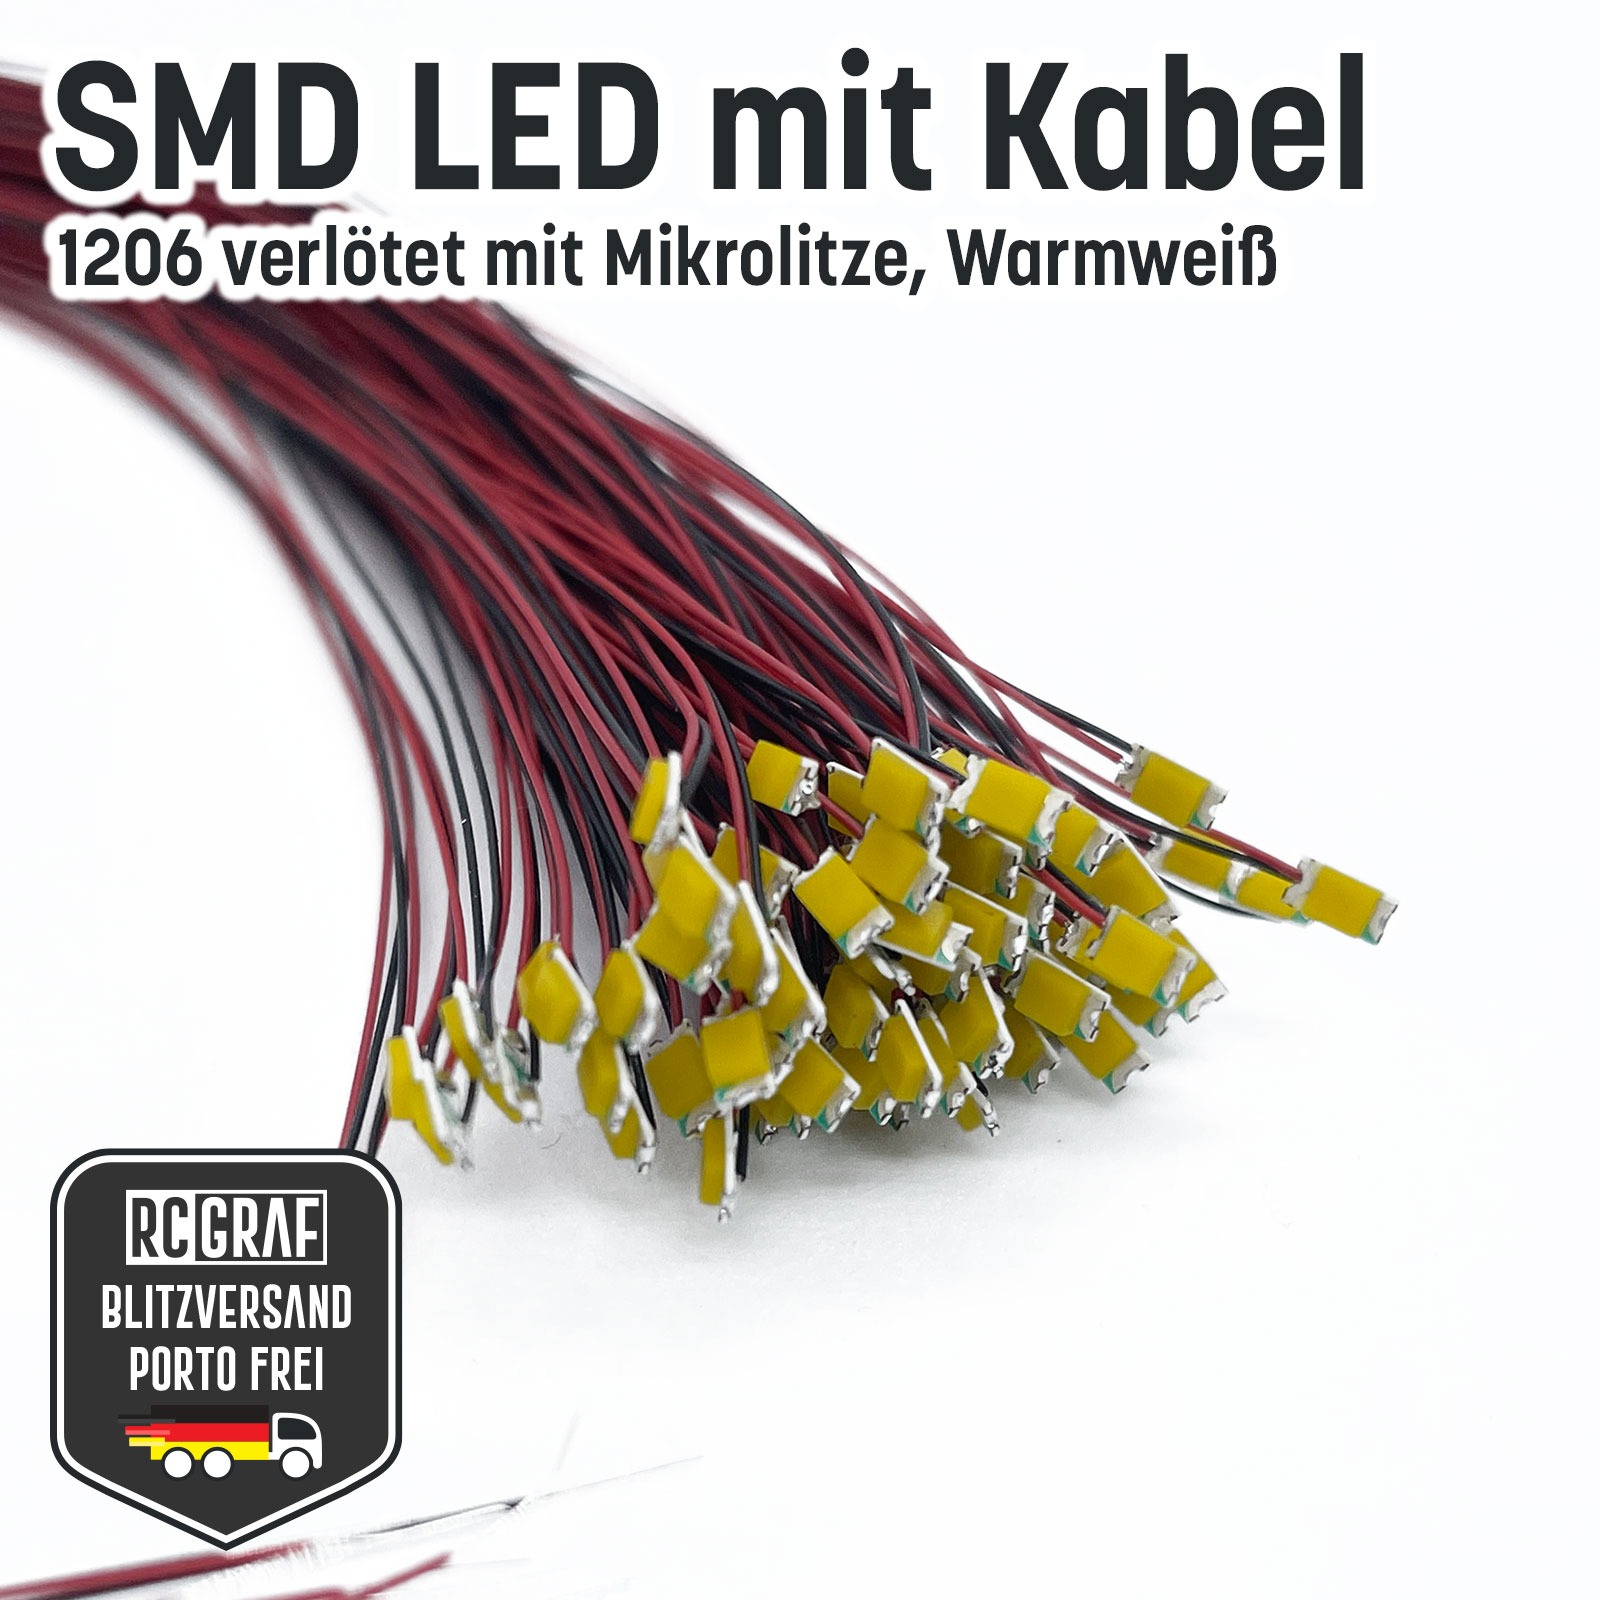 SMD LED 1206 Microlitze 30cm verlötet 7